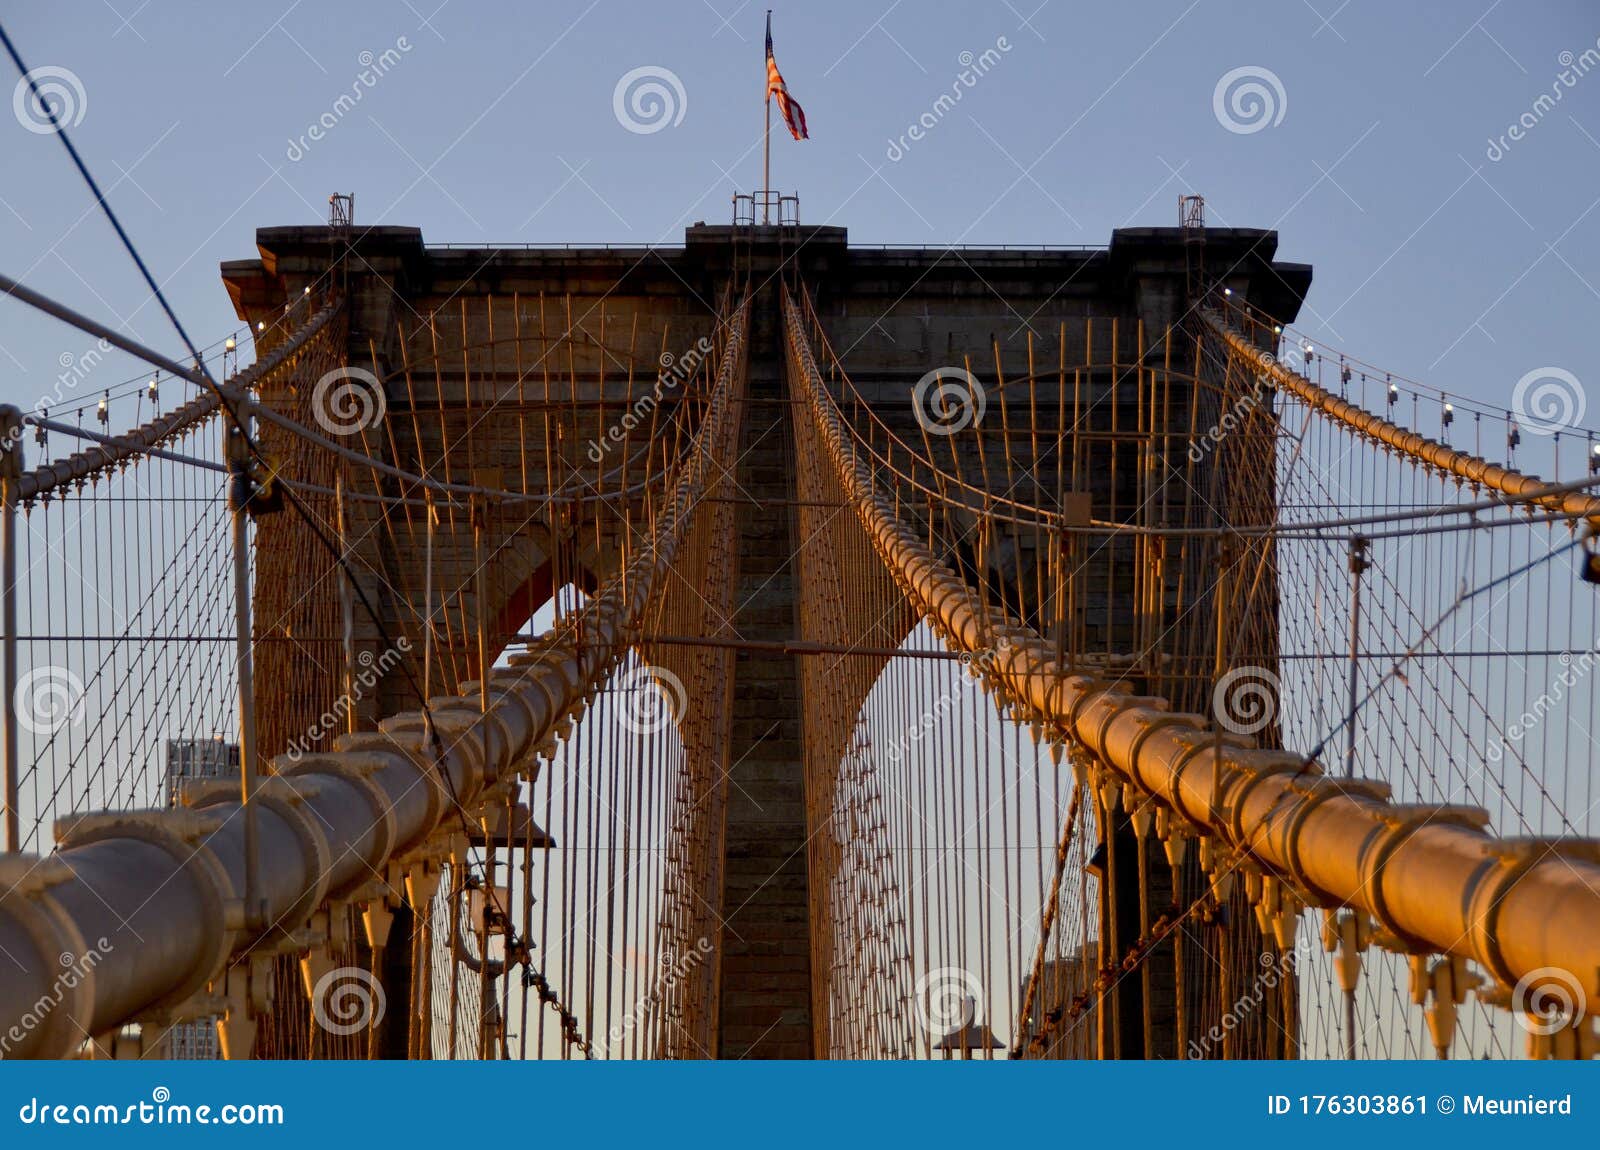 El Puente De Brooklyn Es Uno De Los Puentes Más Antiguos De Nosotros de archivo - Imagen de alto, 176303861